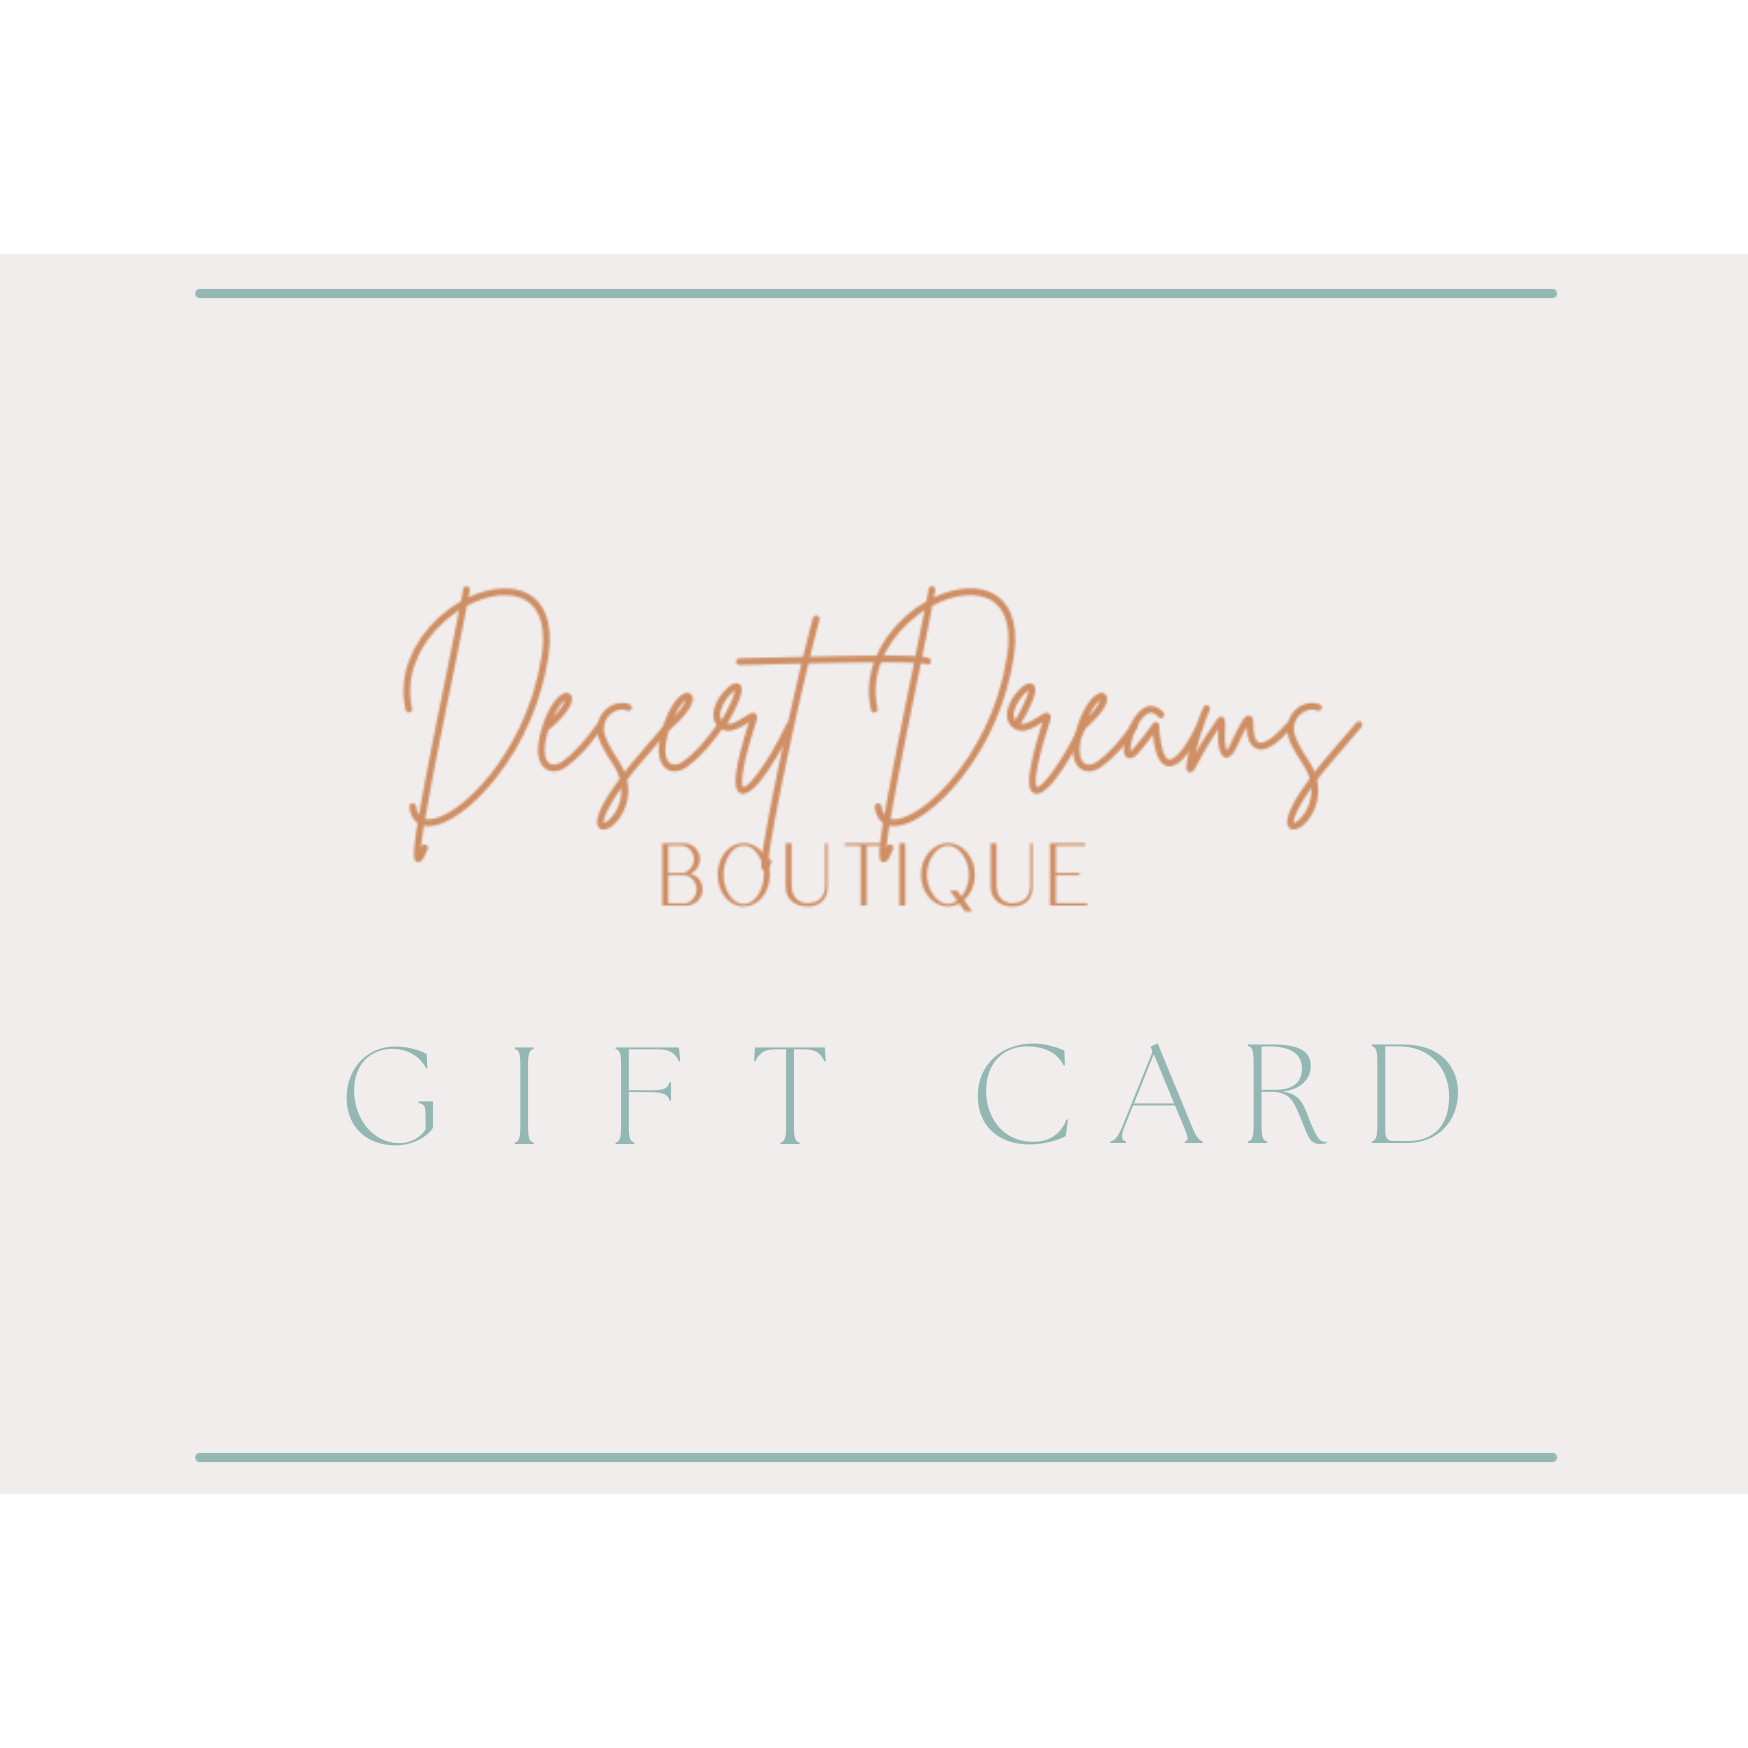 Desert Dreams Boutique eGift Card - Desert Dreams Boutique